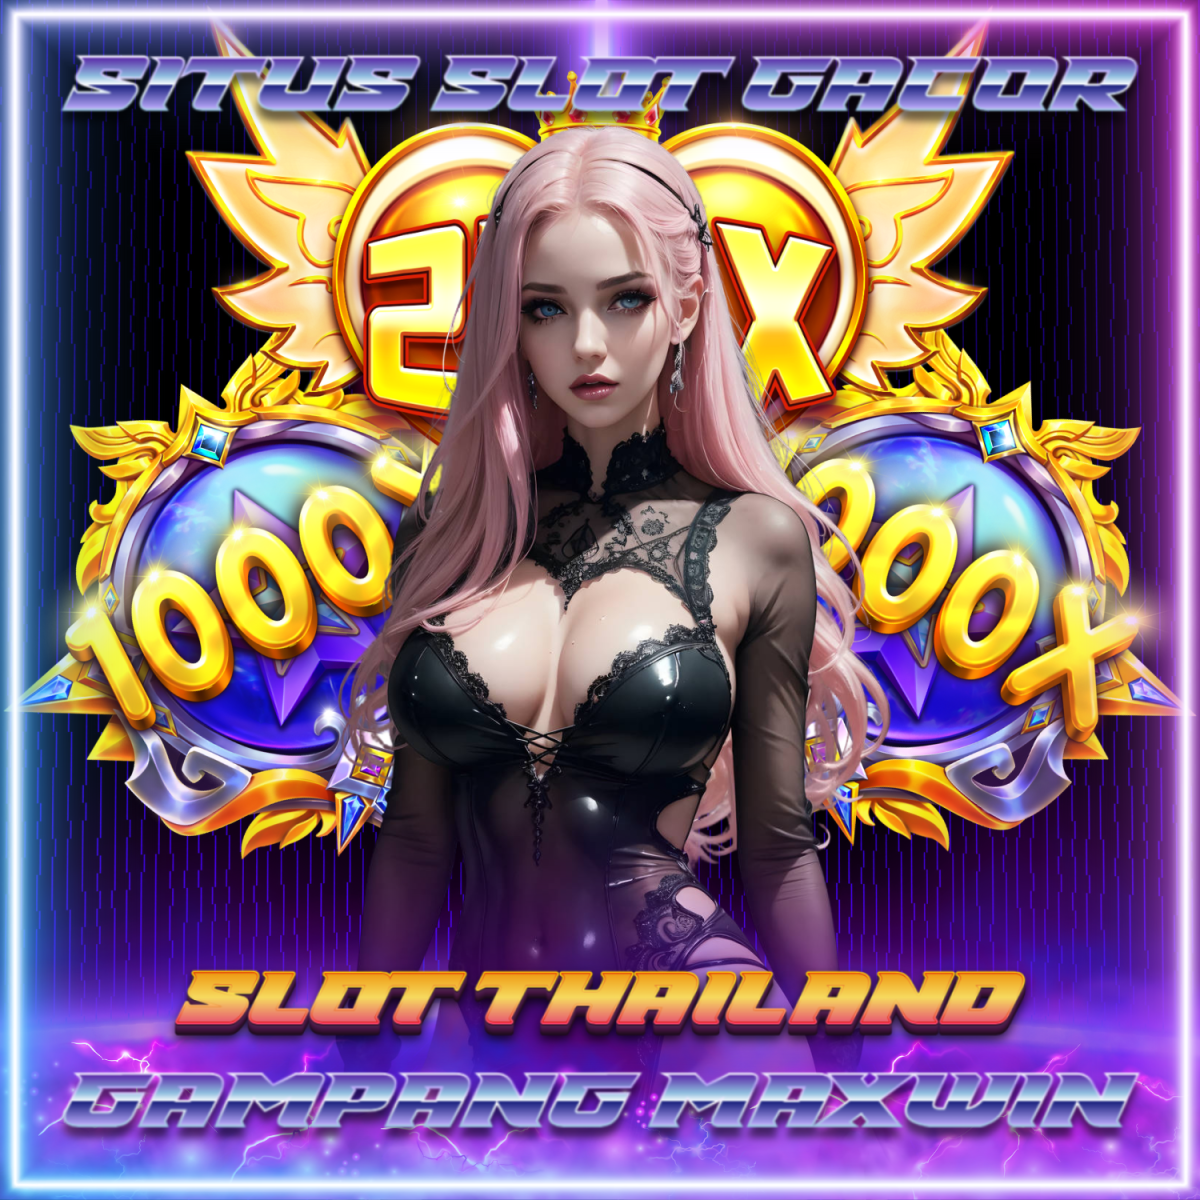 Ulasan Lengkap tentang Situs Slot Server Thailand Terbaik saat ini